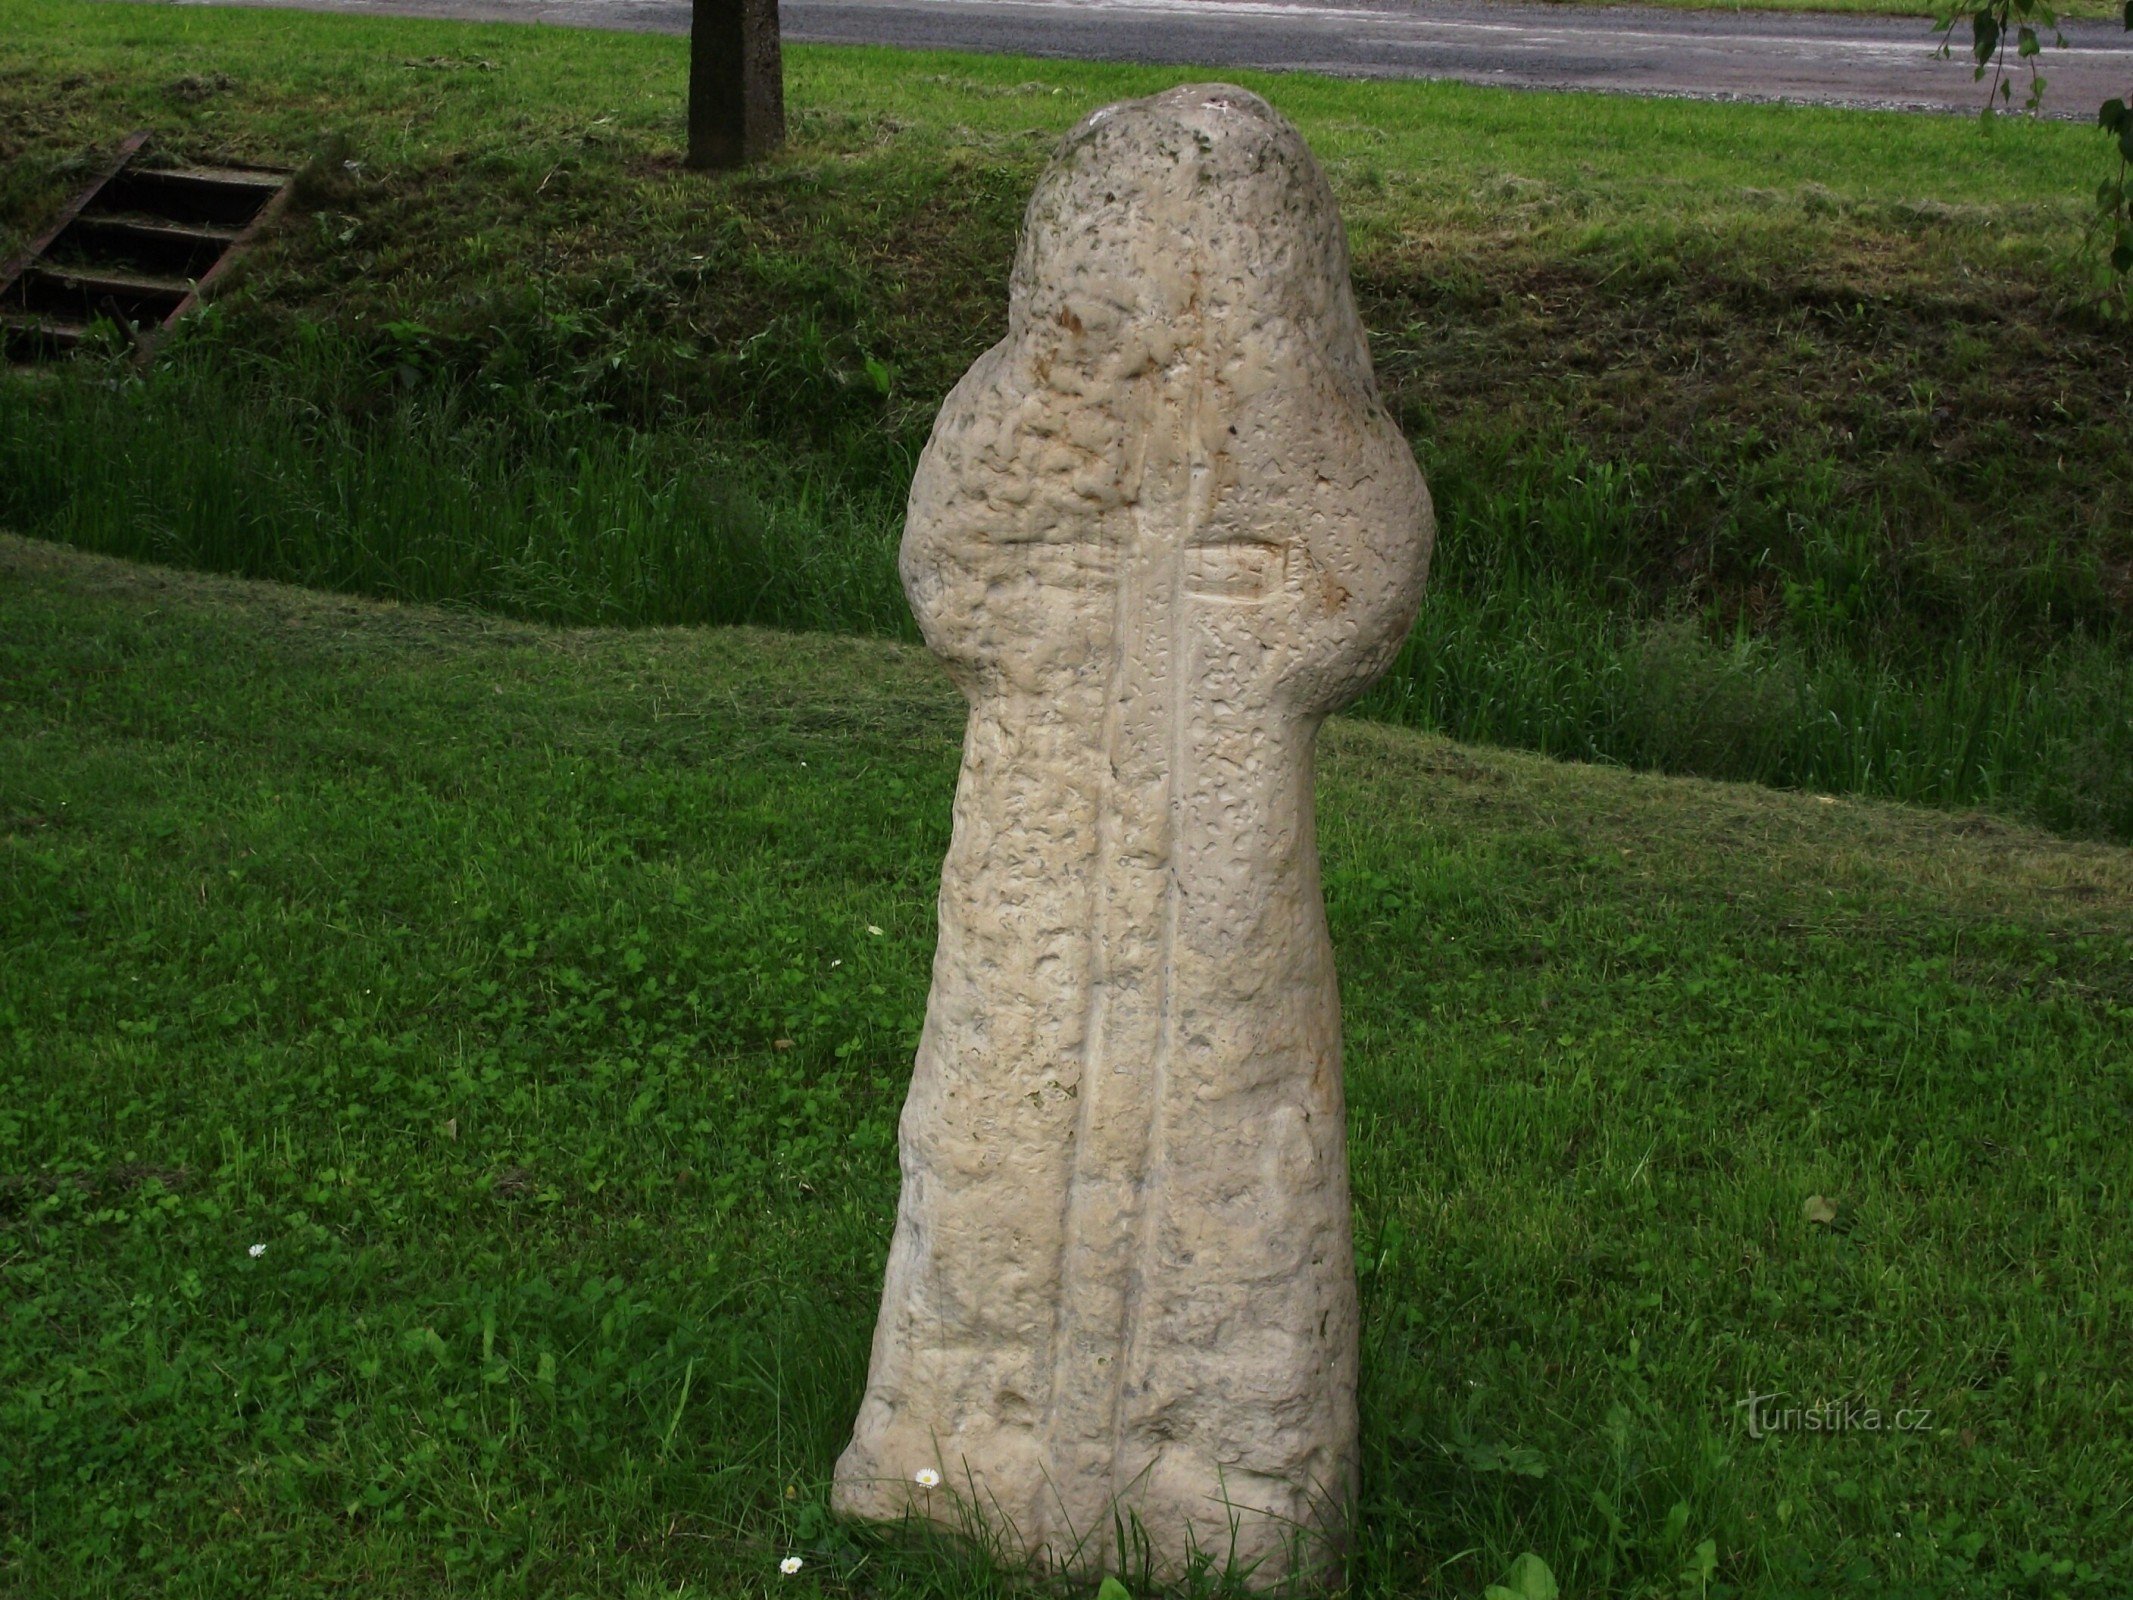 Rájec (près de Zábřeh) - croix de réconciliation